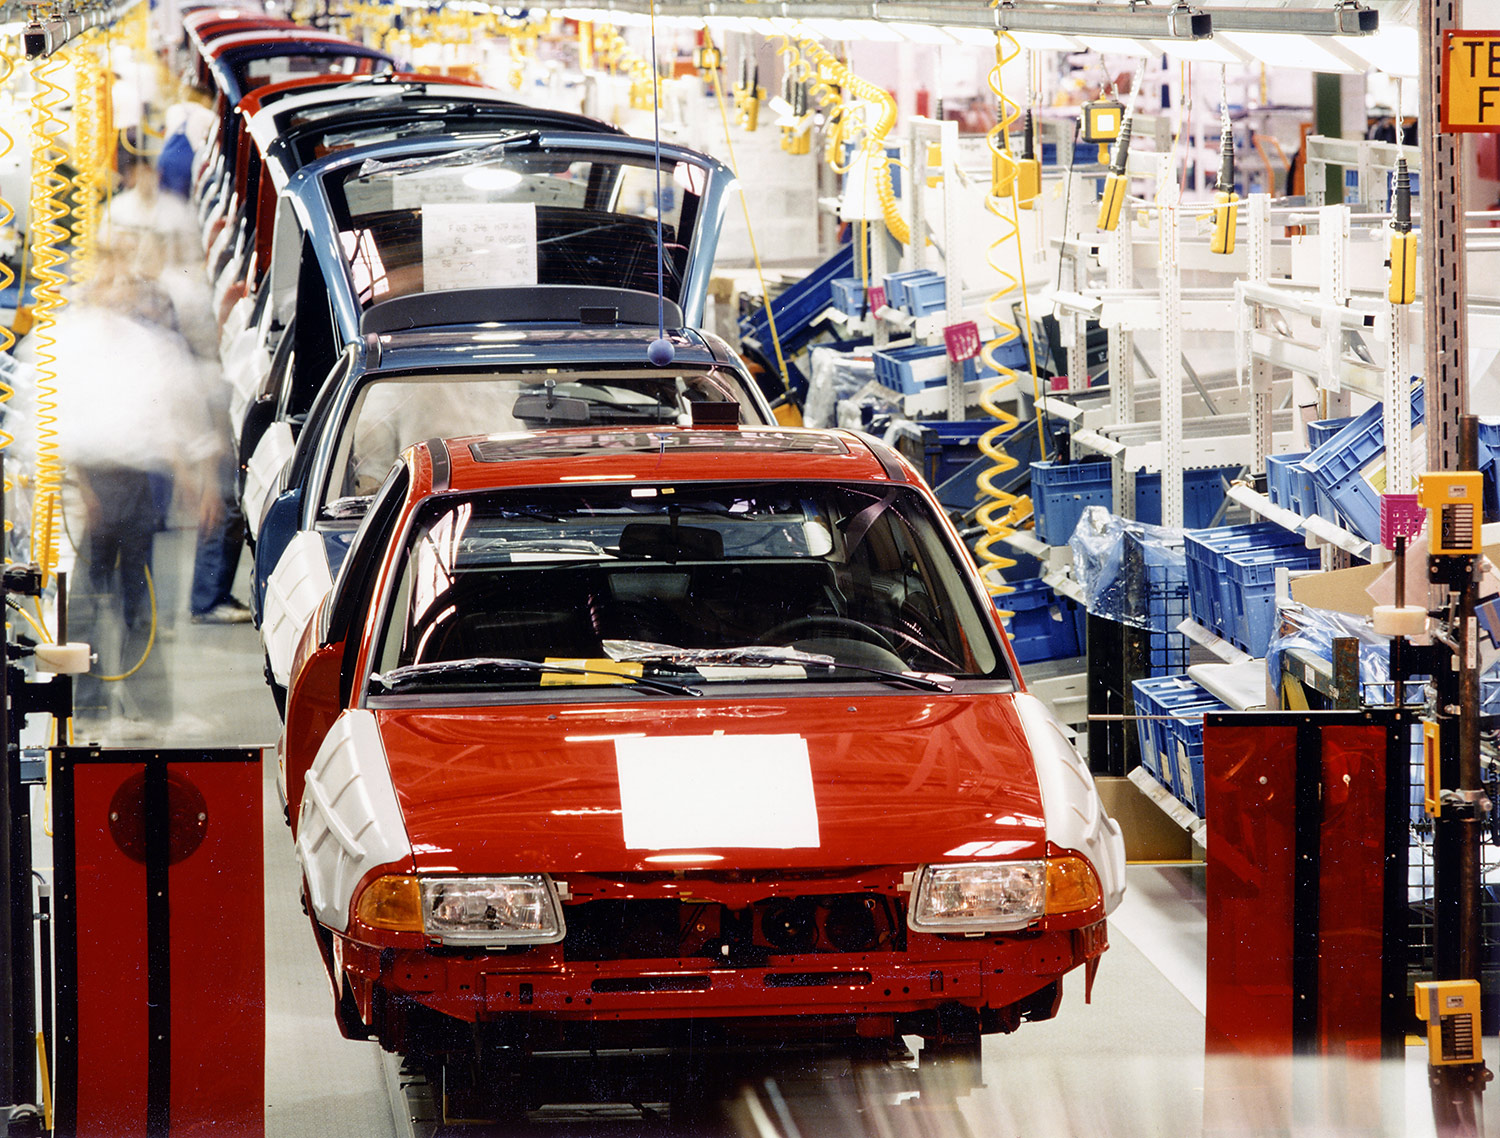 Opel-Jubiläum: 30 Jahre Werk Eisenach